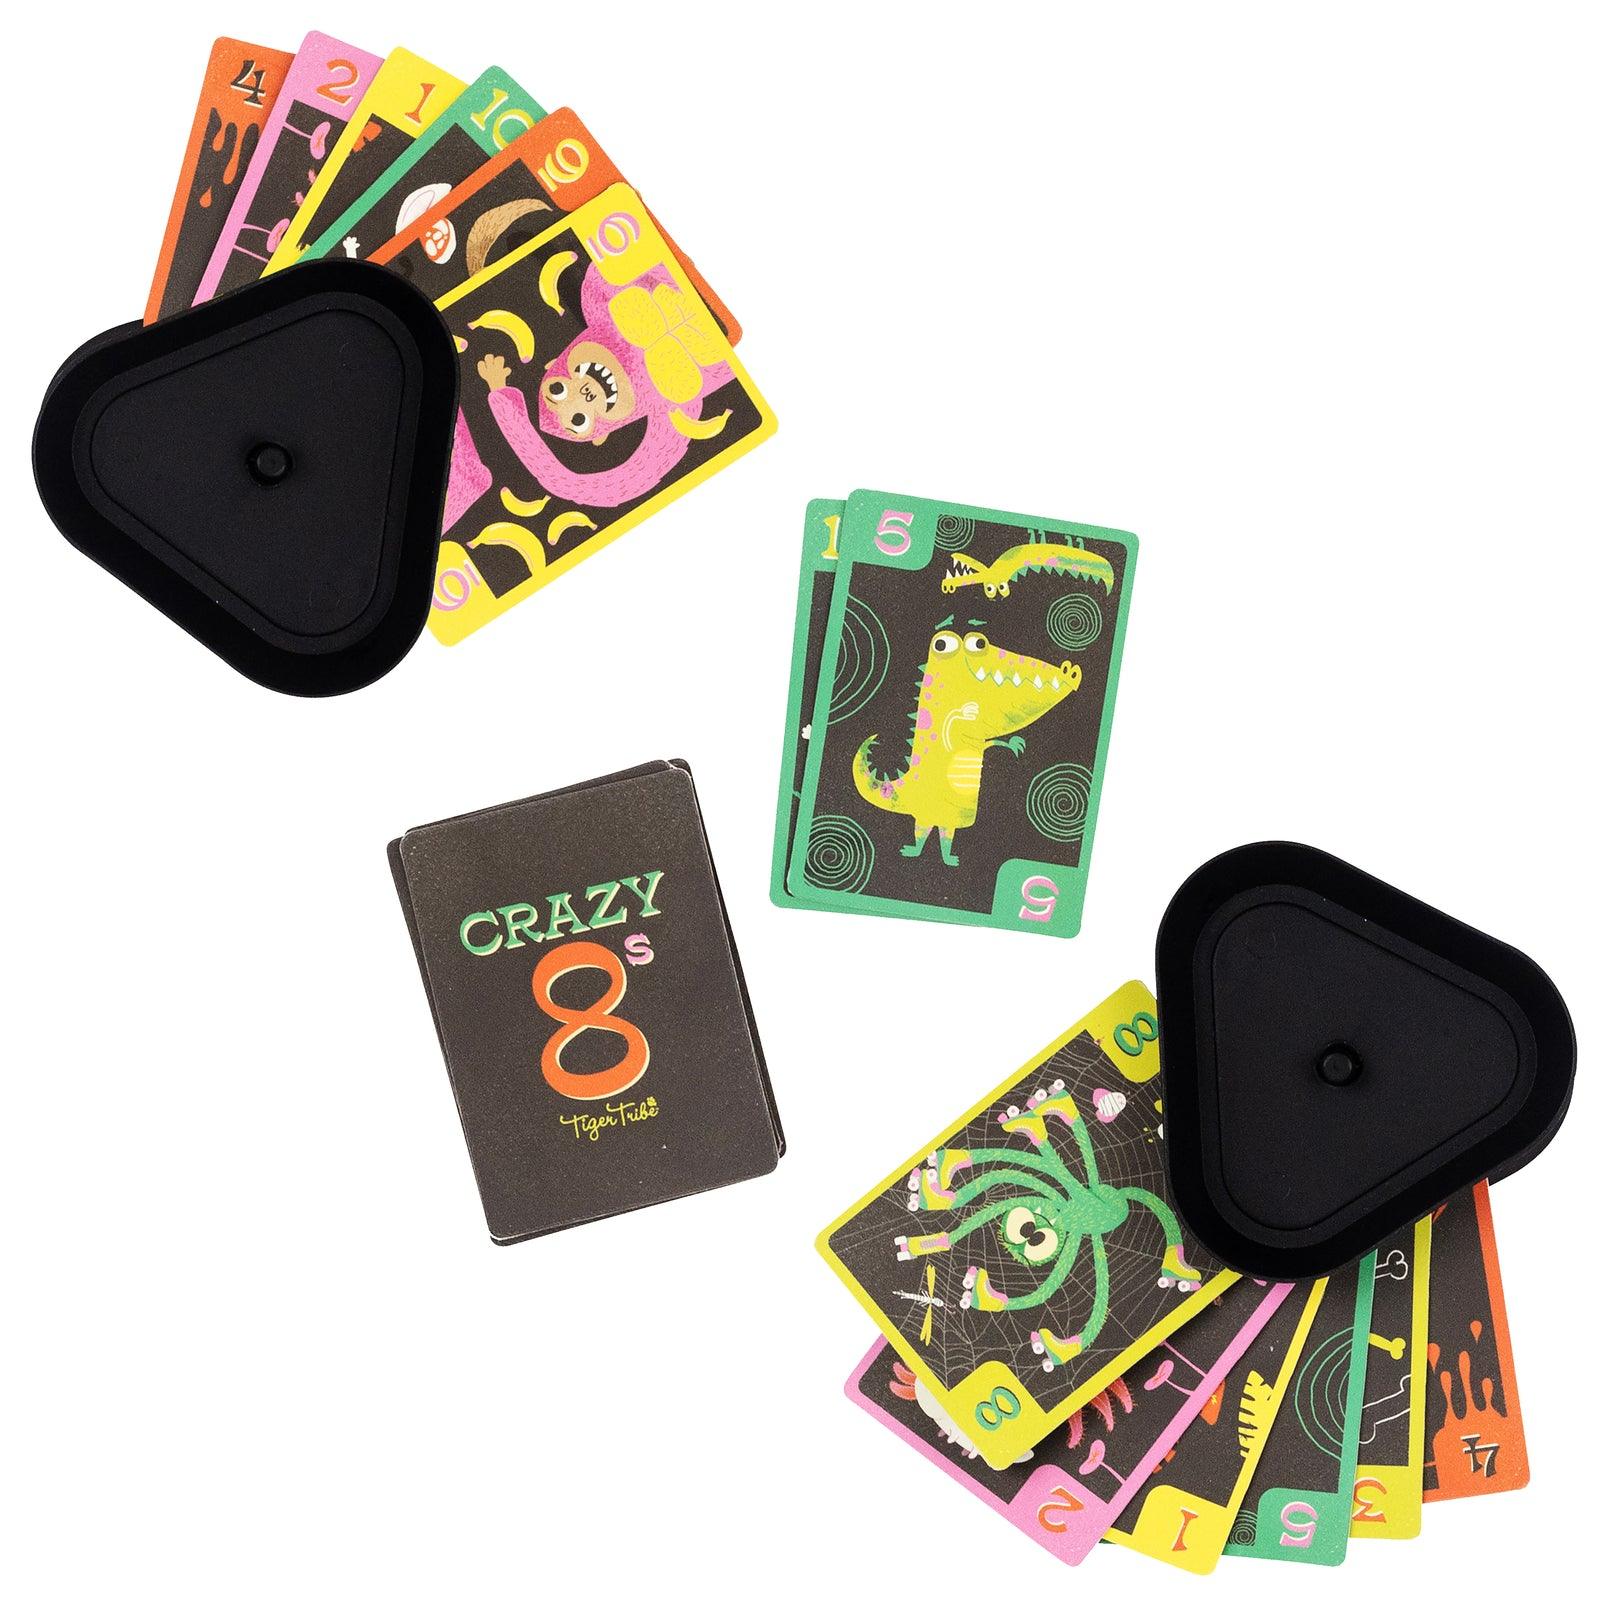 Crazy 8s + Go Fish! - Card Game Set - Handworks Nouveau Paperie